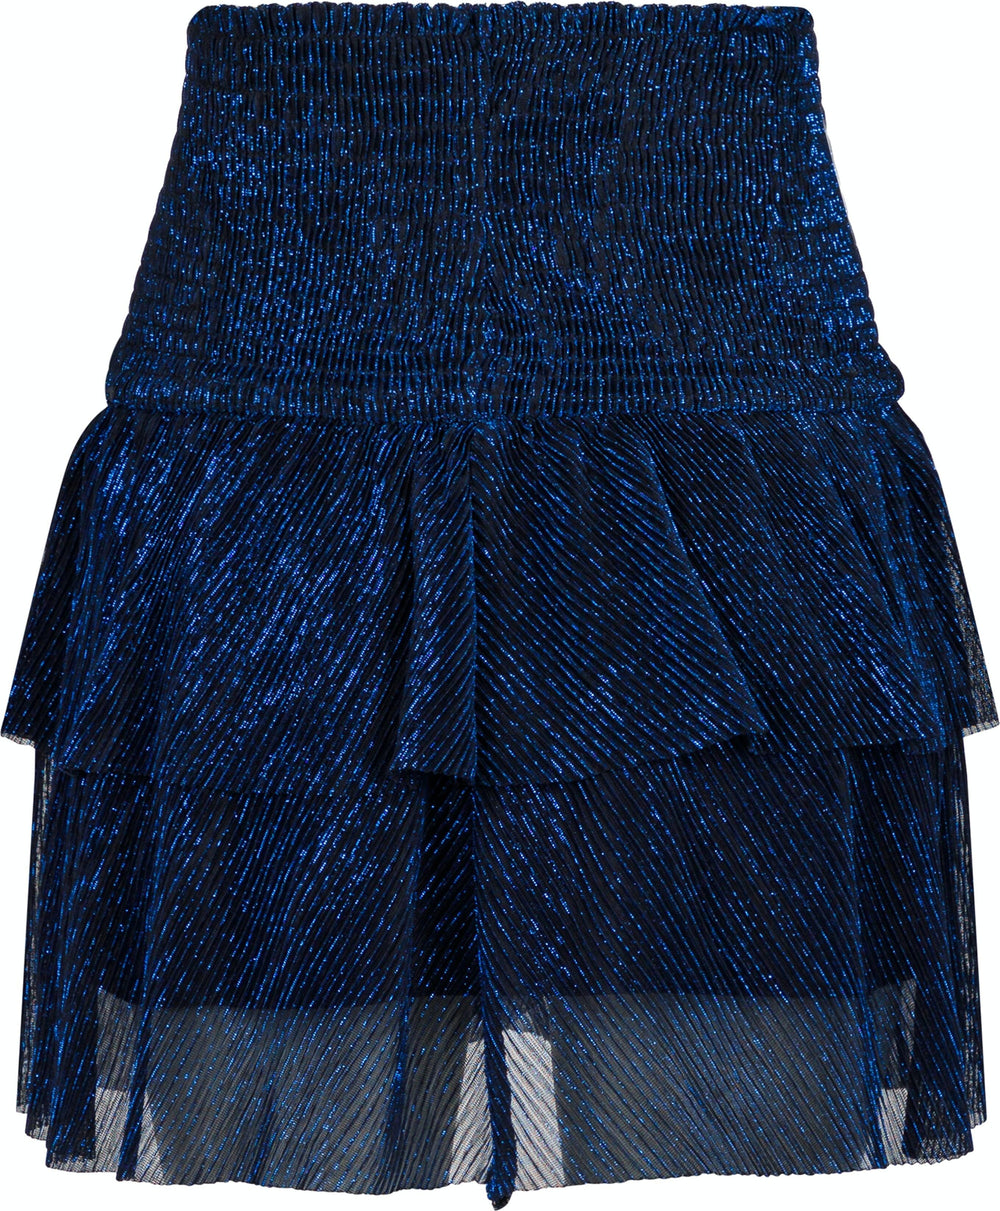 Neo Noir - Carin Glitz Skirt - Blue